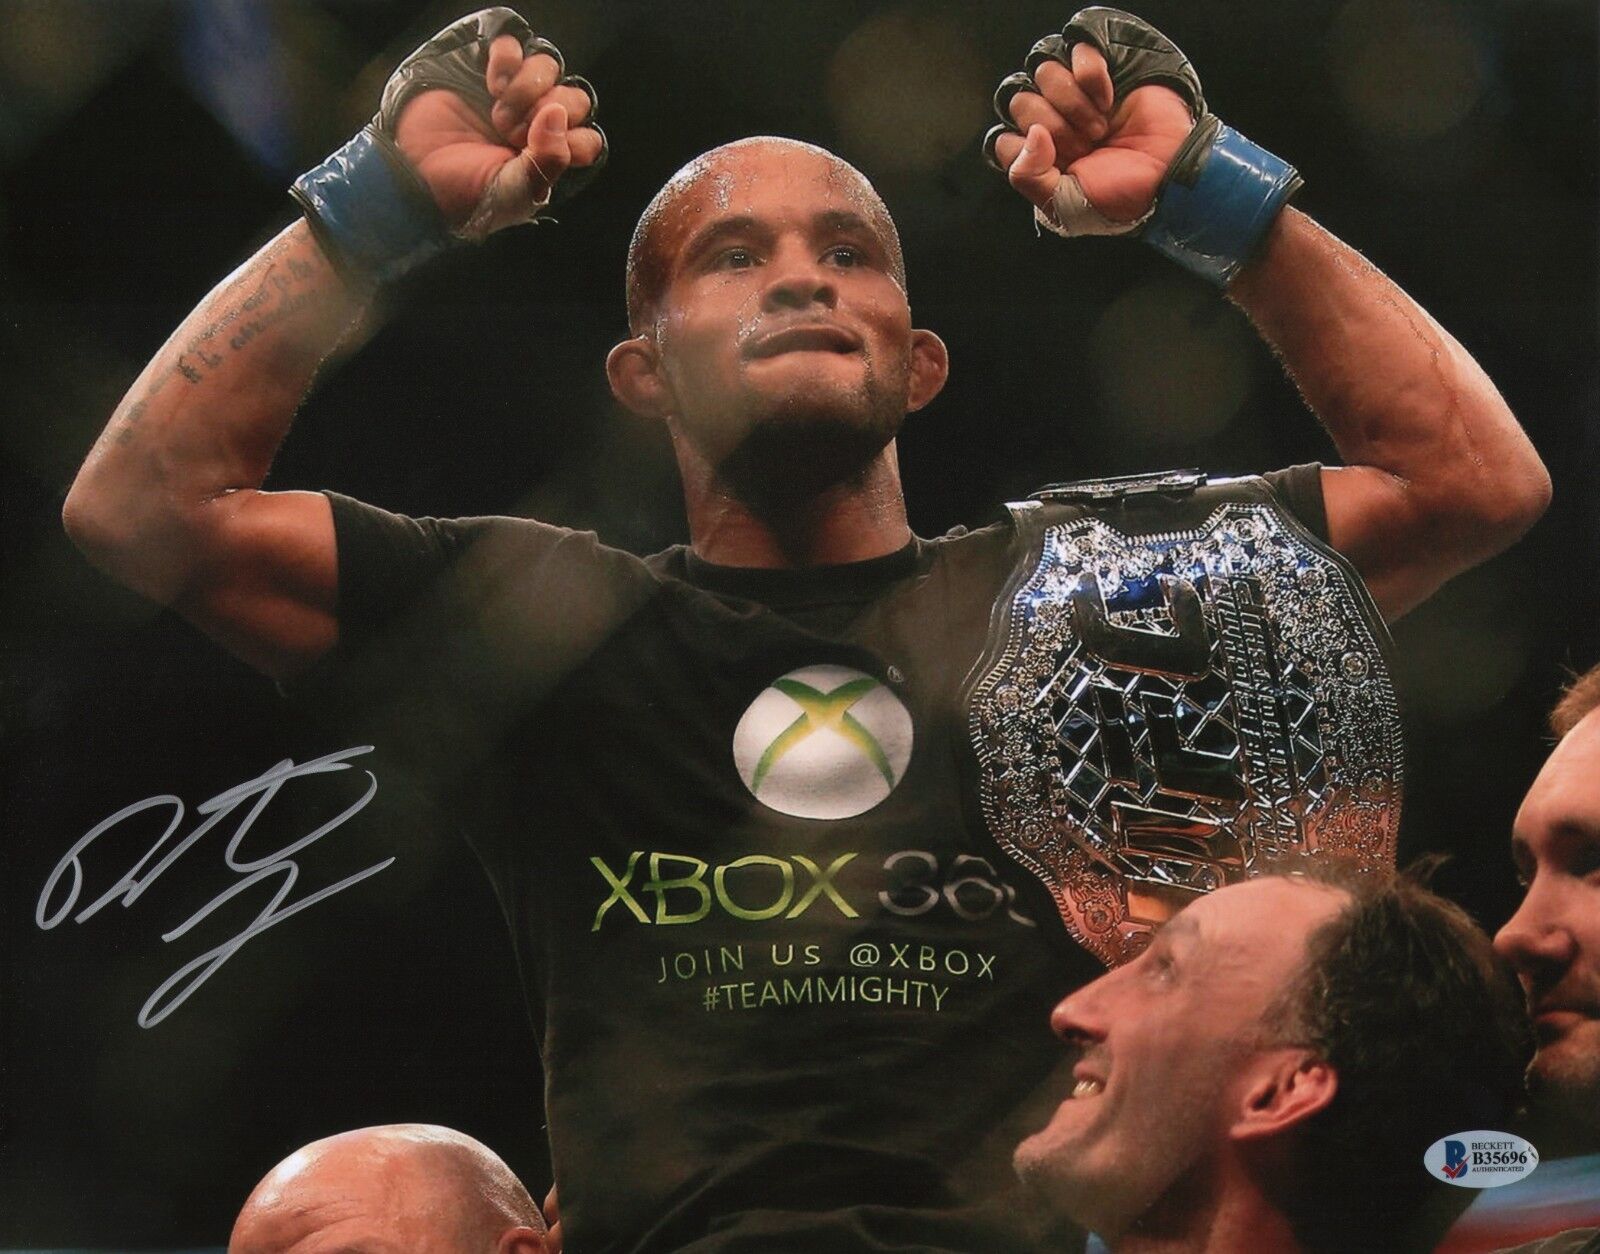 Demetrious Johnson Signed 11x14 Photo Poster painting BAS COA UFC Belt Picture Autograph 197 174